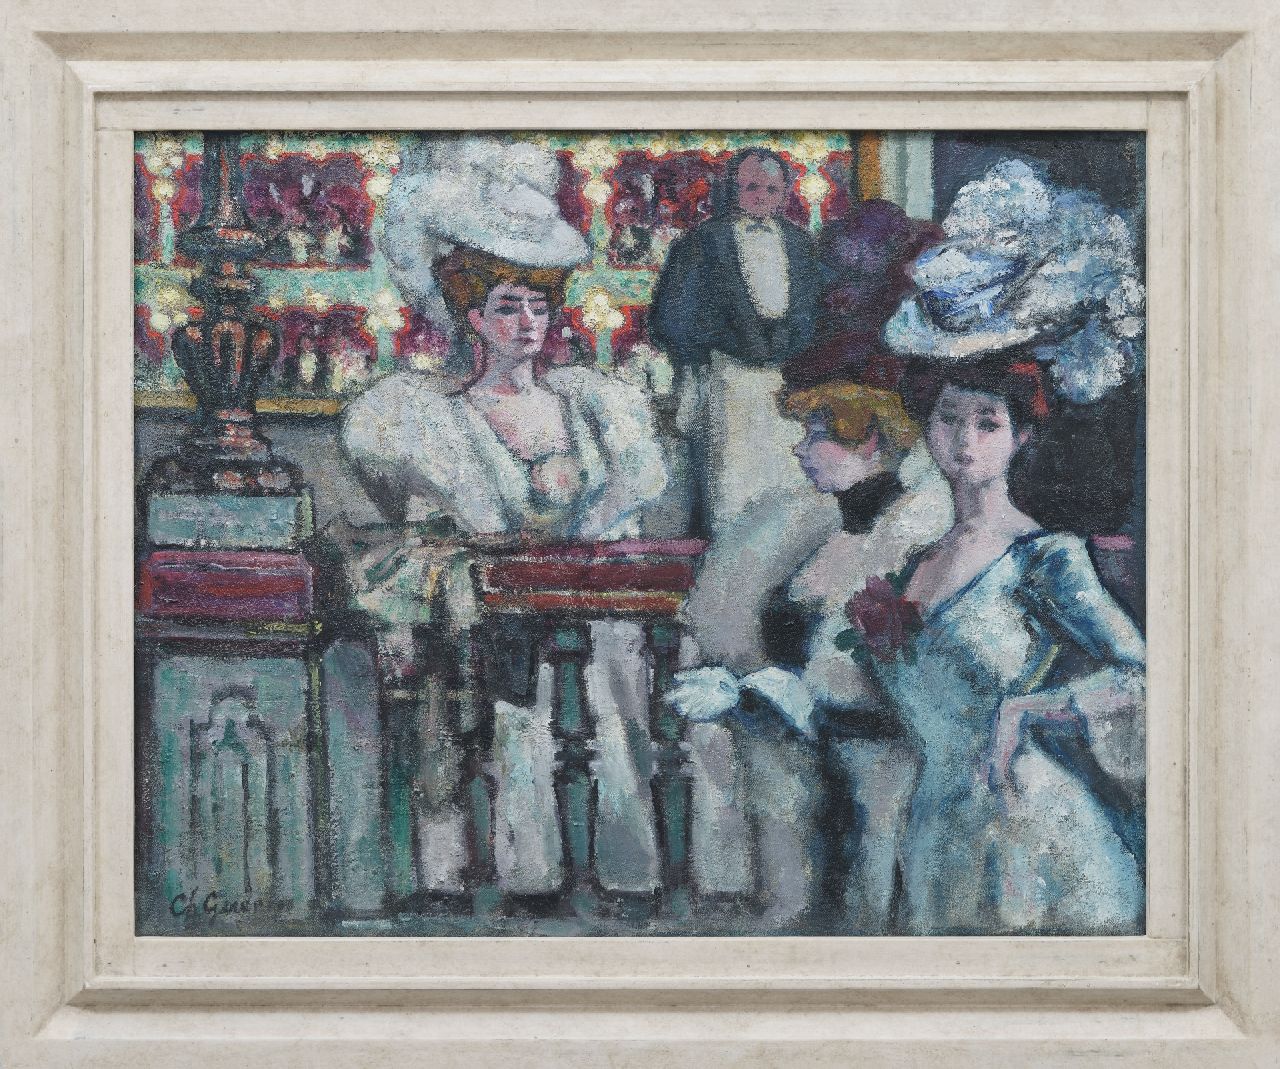 Guérin Ch.F.P.  | Charles François Prosper Guérin | Schilderijen te koop aangeboden | Cocottes, olieverf op doek 64,9 x 81,0 cm, gesigneerd linksonder